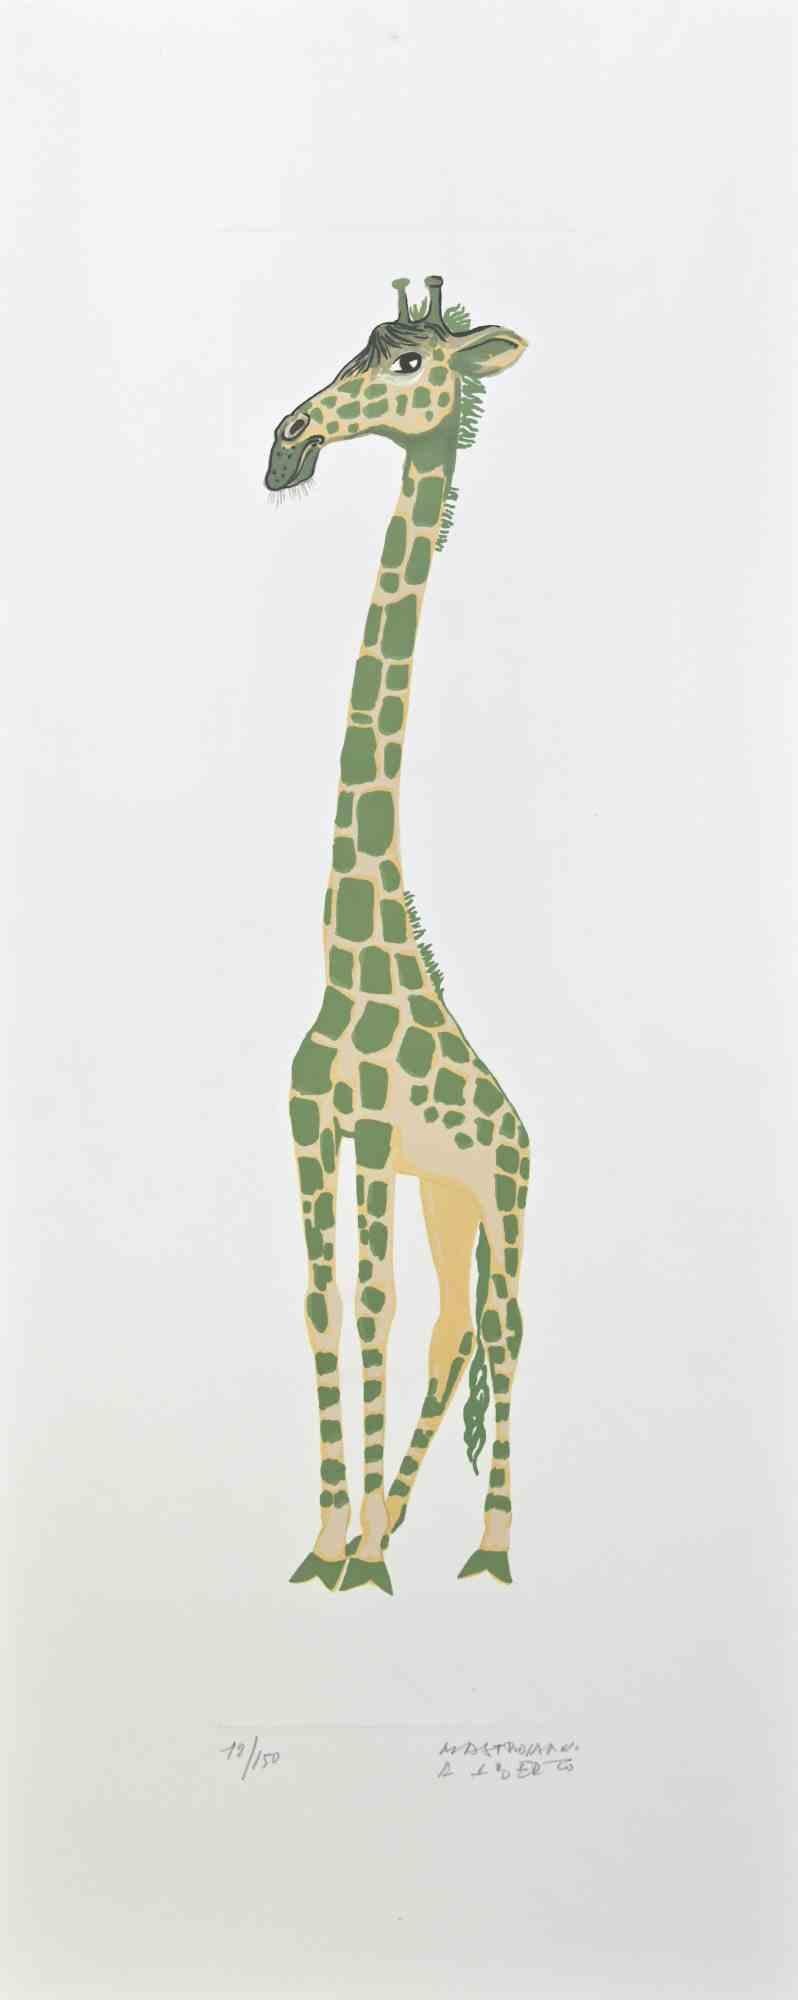 Girafe - Lithographie d'Alberto Mastroianni - 1970